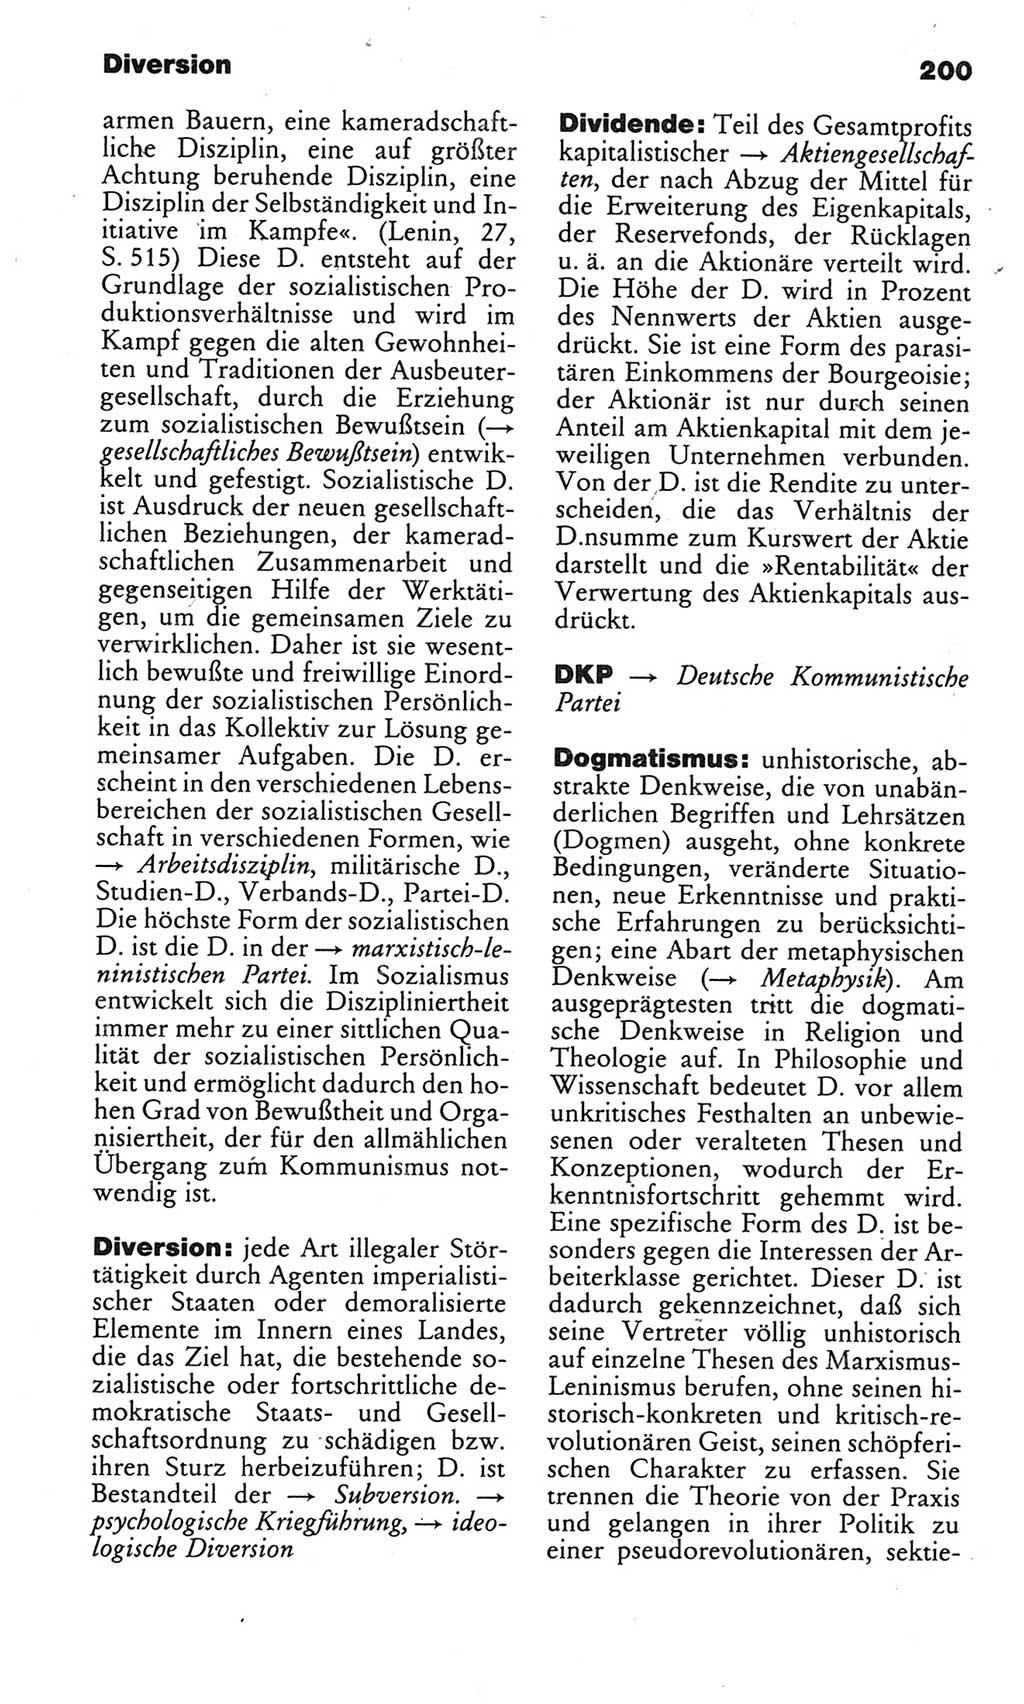 Kleines politisches Wörterbuch [Deutsche Demokratische Republik (DDR)] 1985, Seite 200 (Kl. pol. Wb. DDR 1985, S. 200)